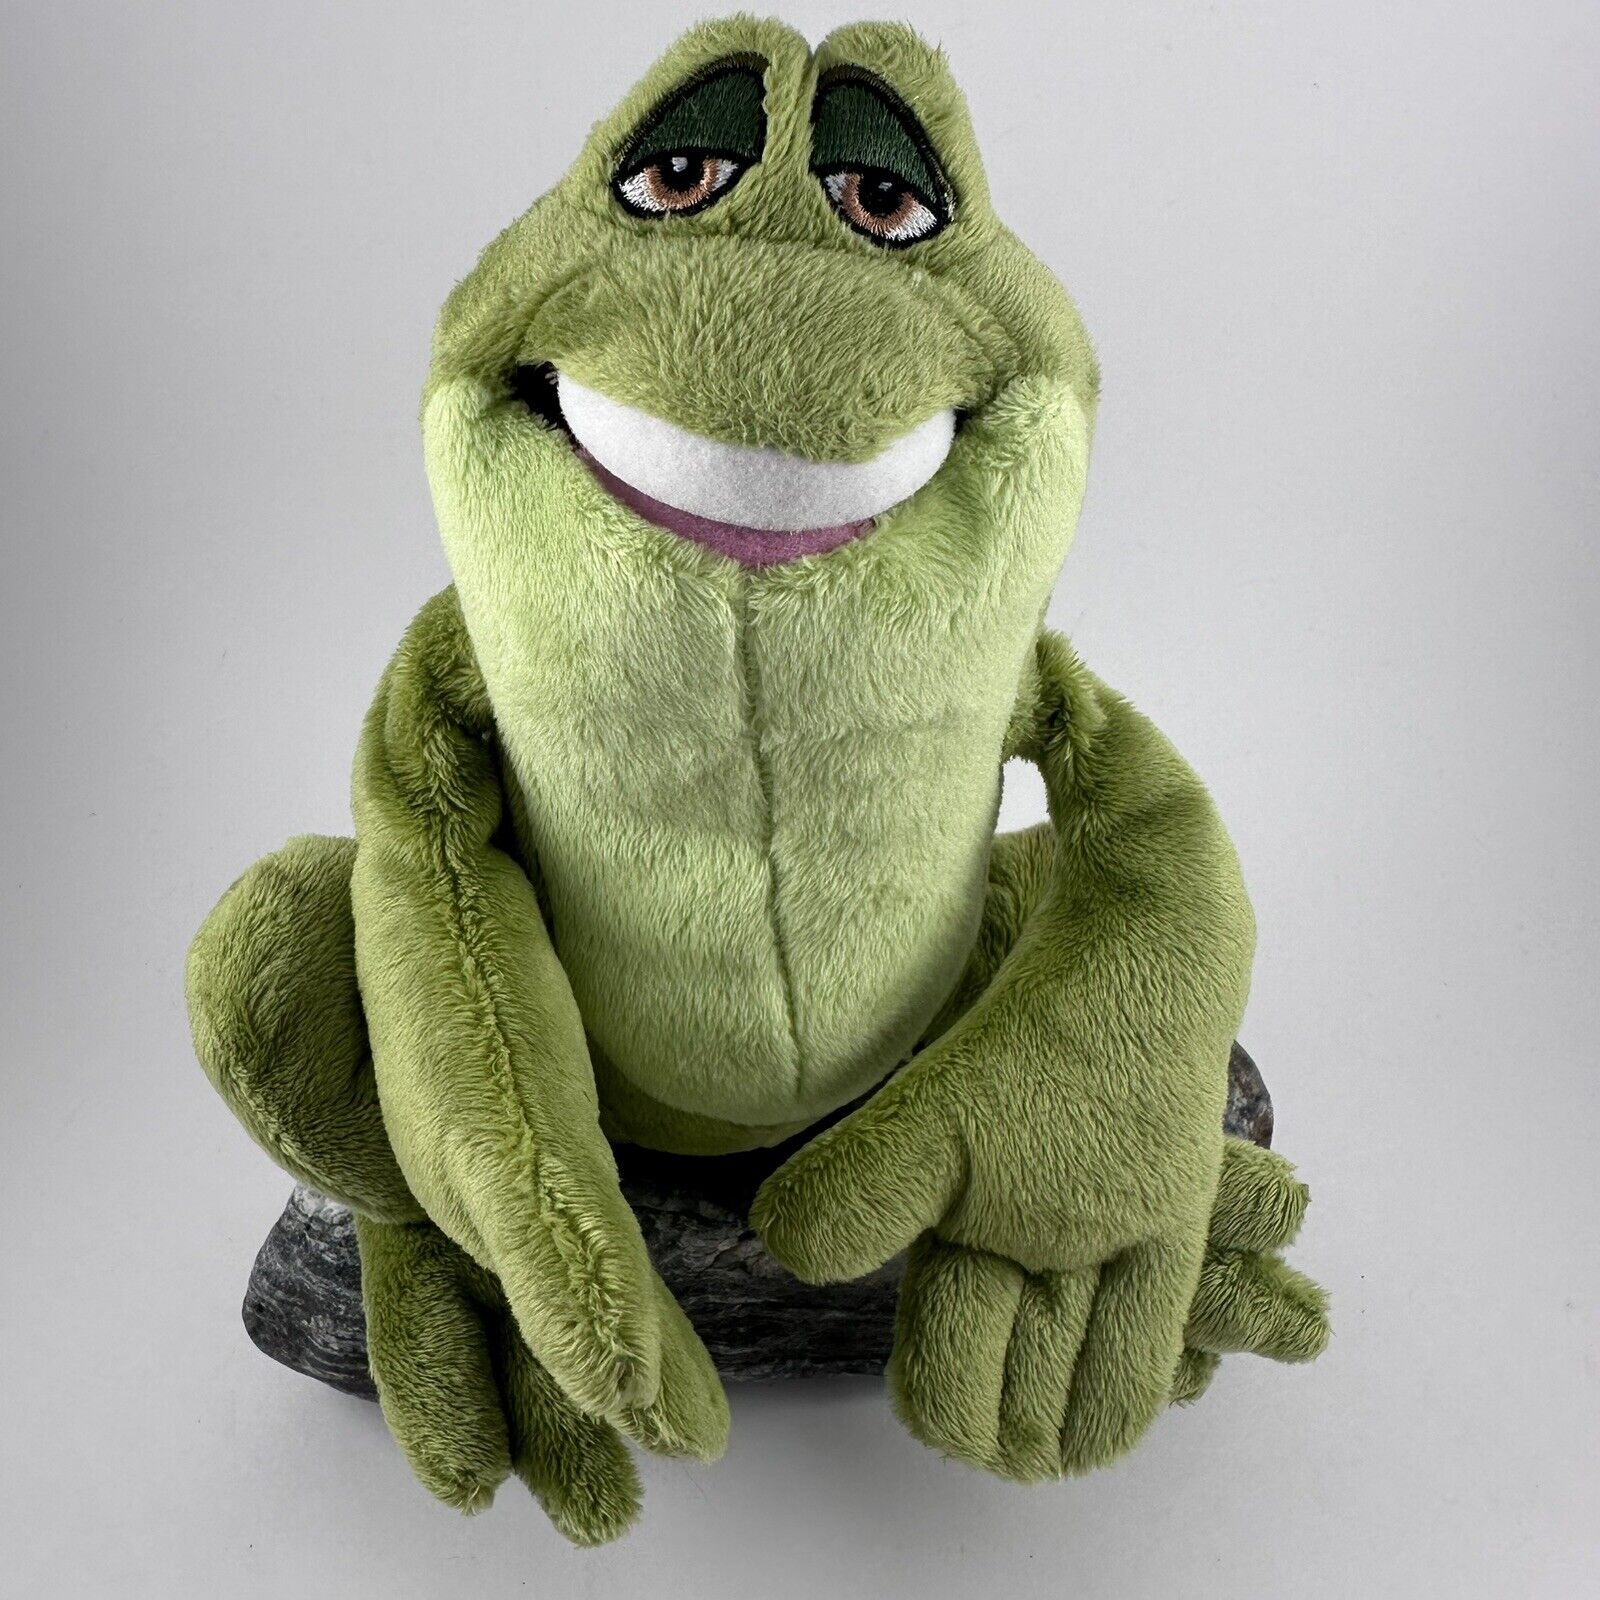 Disney Store Princess and the Frog Prince Naveen 8” Stuffed Animal Plush